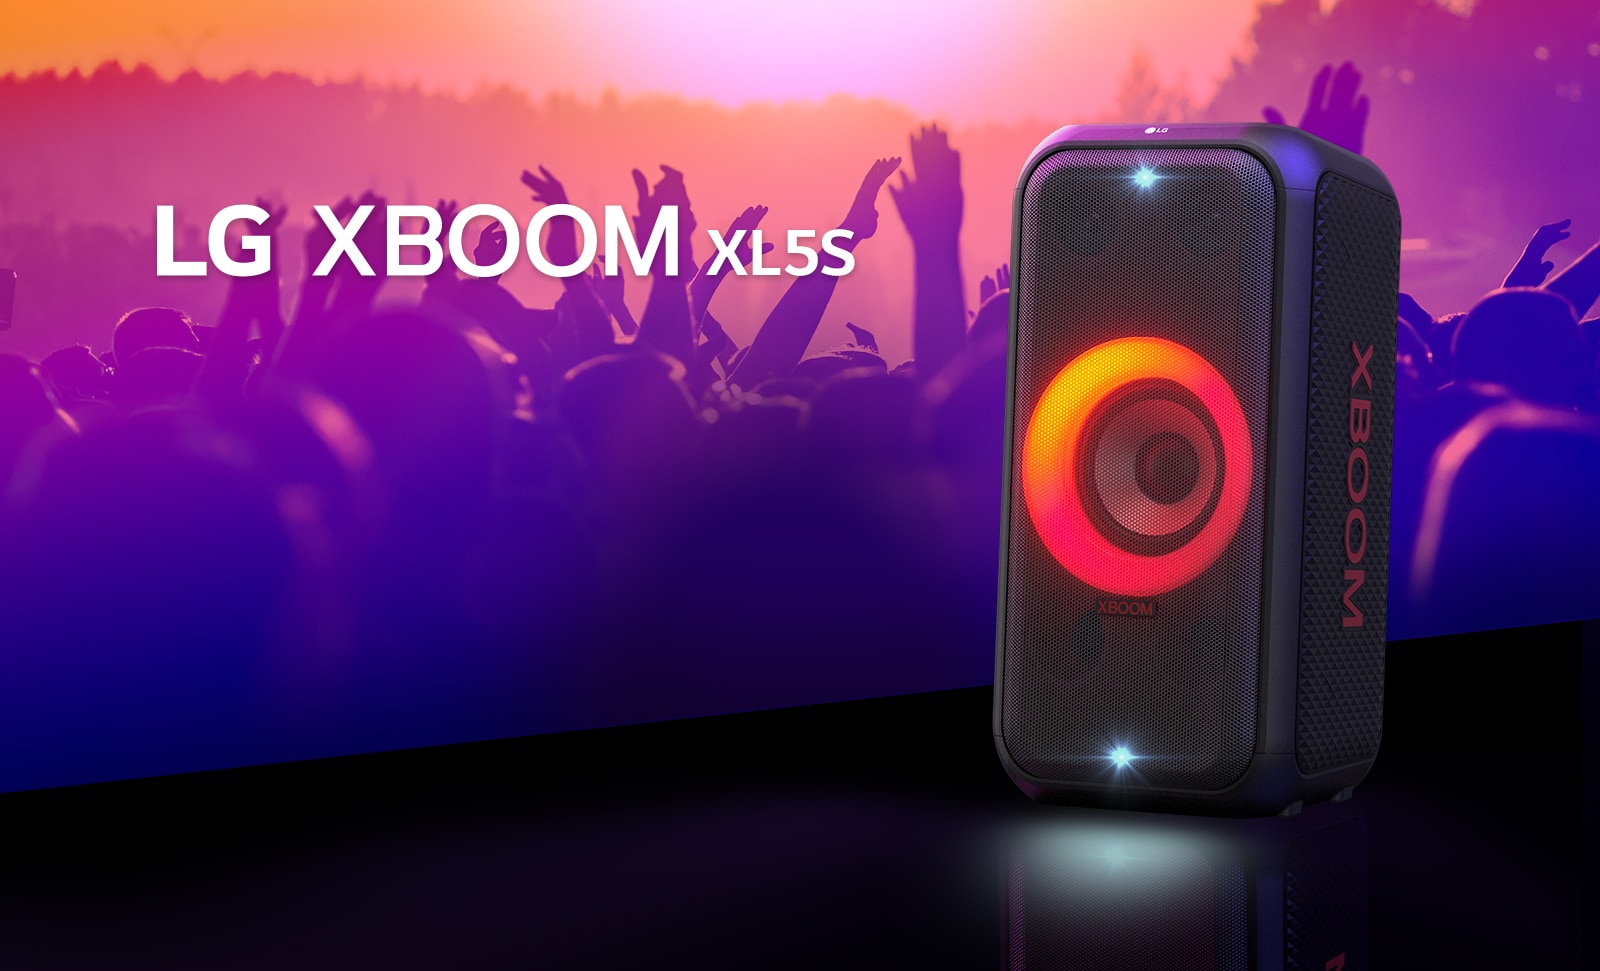 LG XBOOM XL5S je postavljen na binu sa uključenim crveno-narandžastim nijansiranim osvetljenjem. Iza bine ljudi uživaju u muzici.